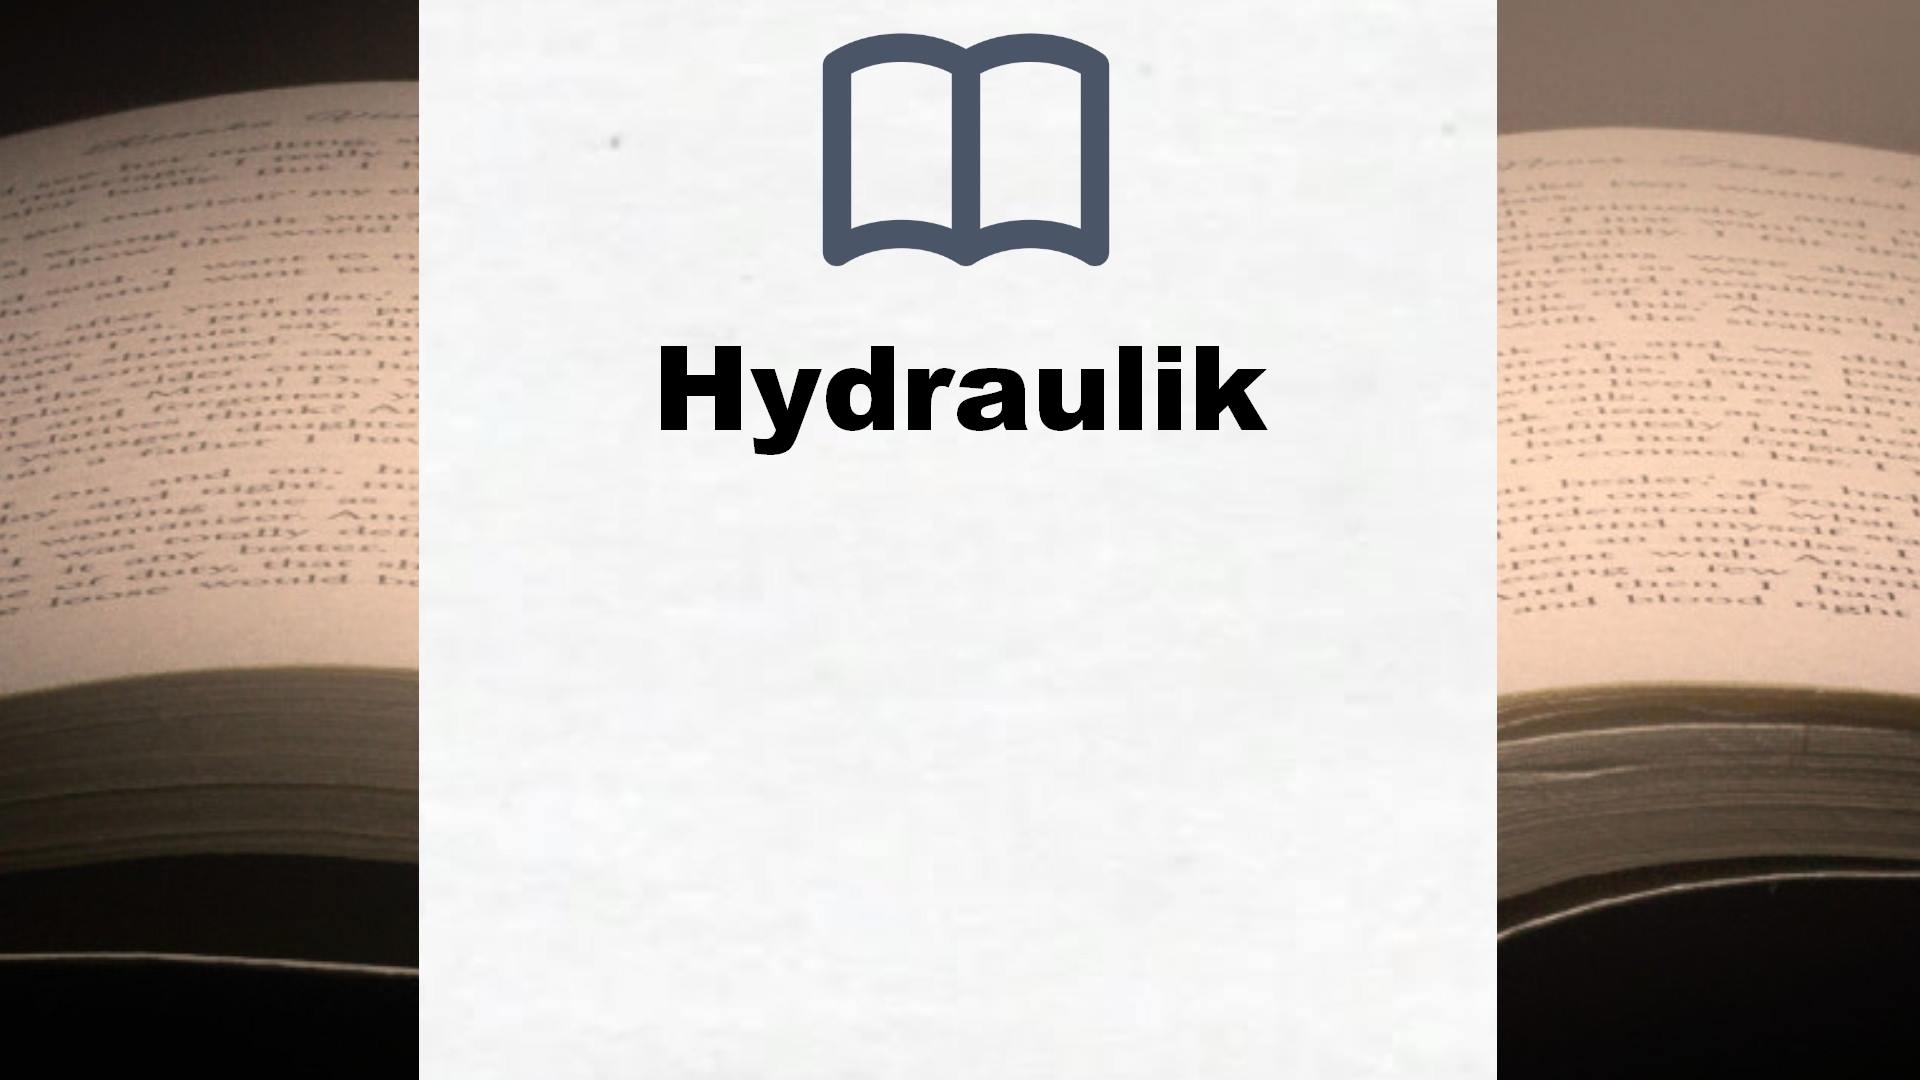 Bücher über Hydraulik